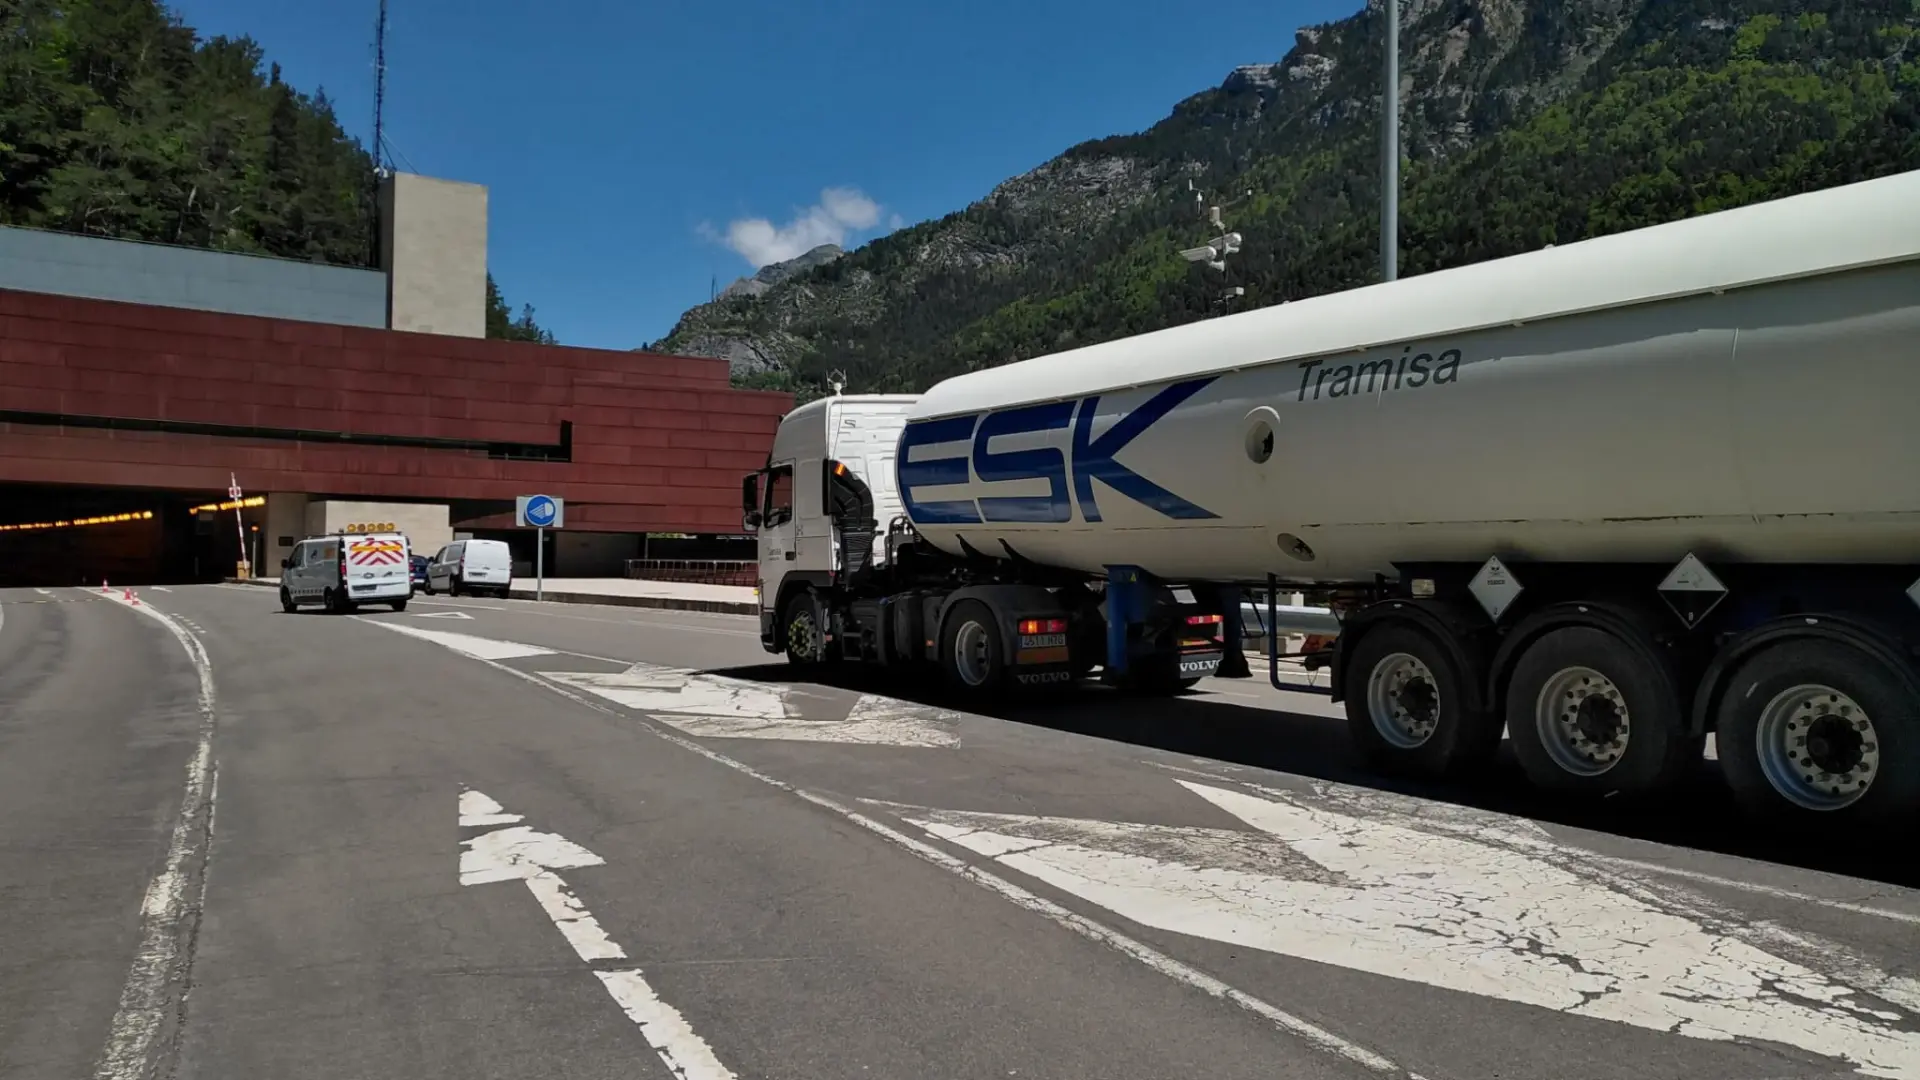 Les protestations des agriculteurs français triplent le trafic aux postes frontières de Huesca